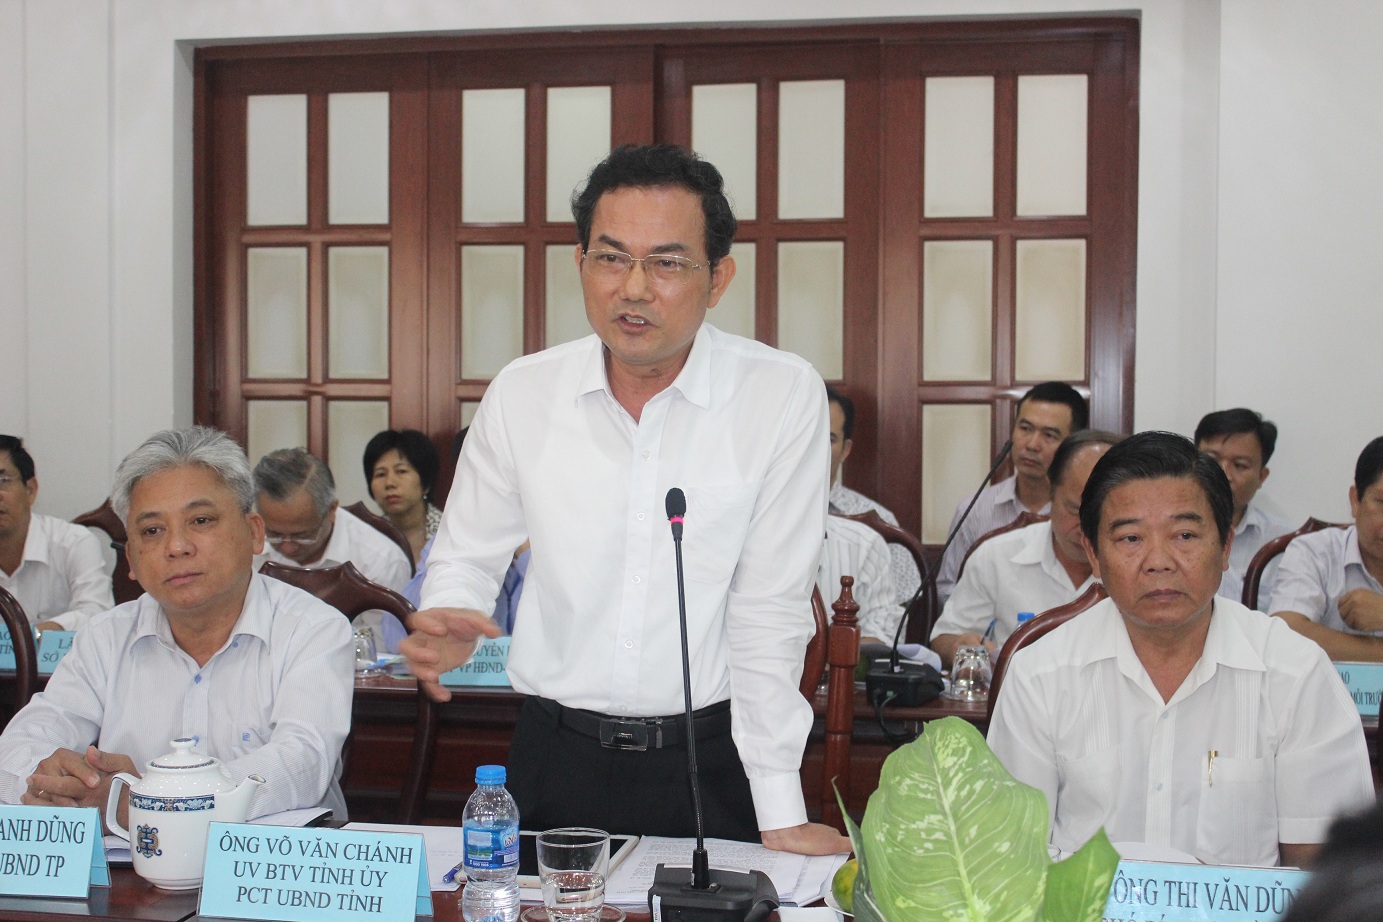  Phó chủ tịch UBND tỉnh Võ Văn Chánh phát biểu tại buổi giám sát